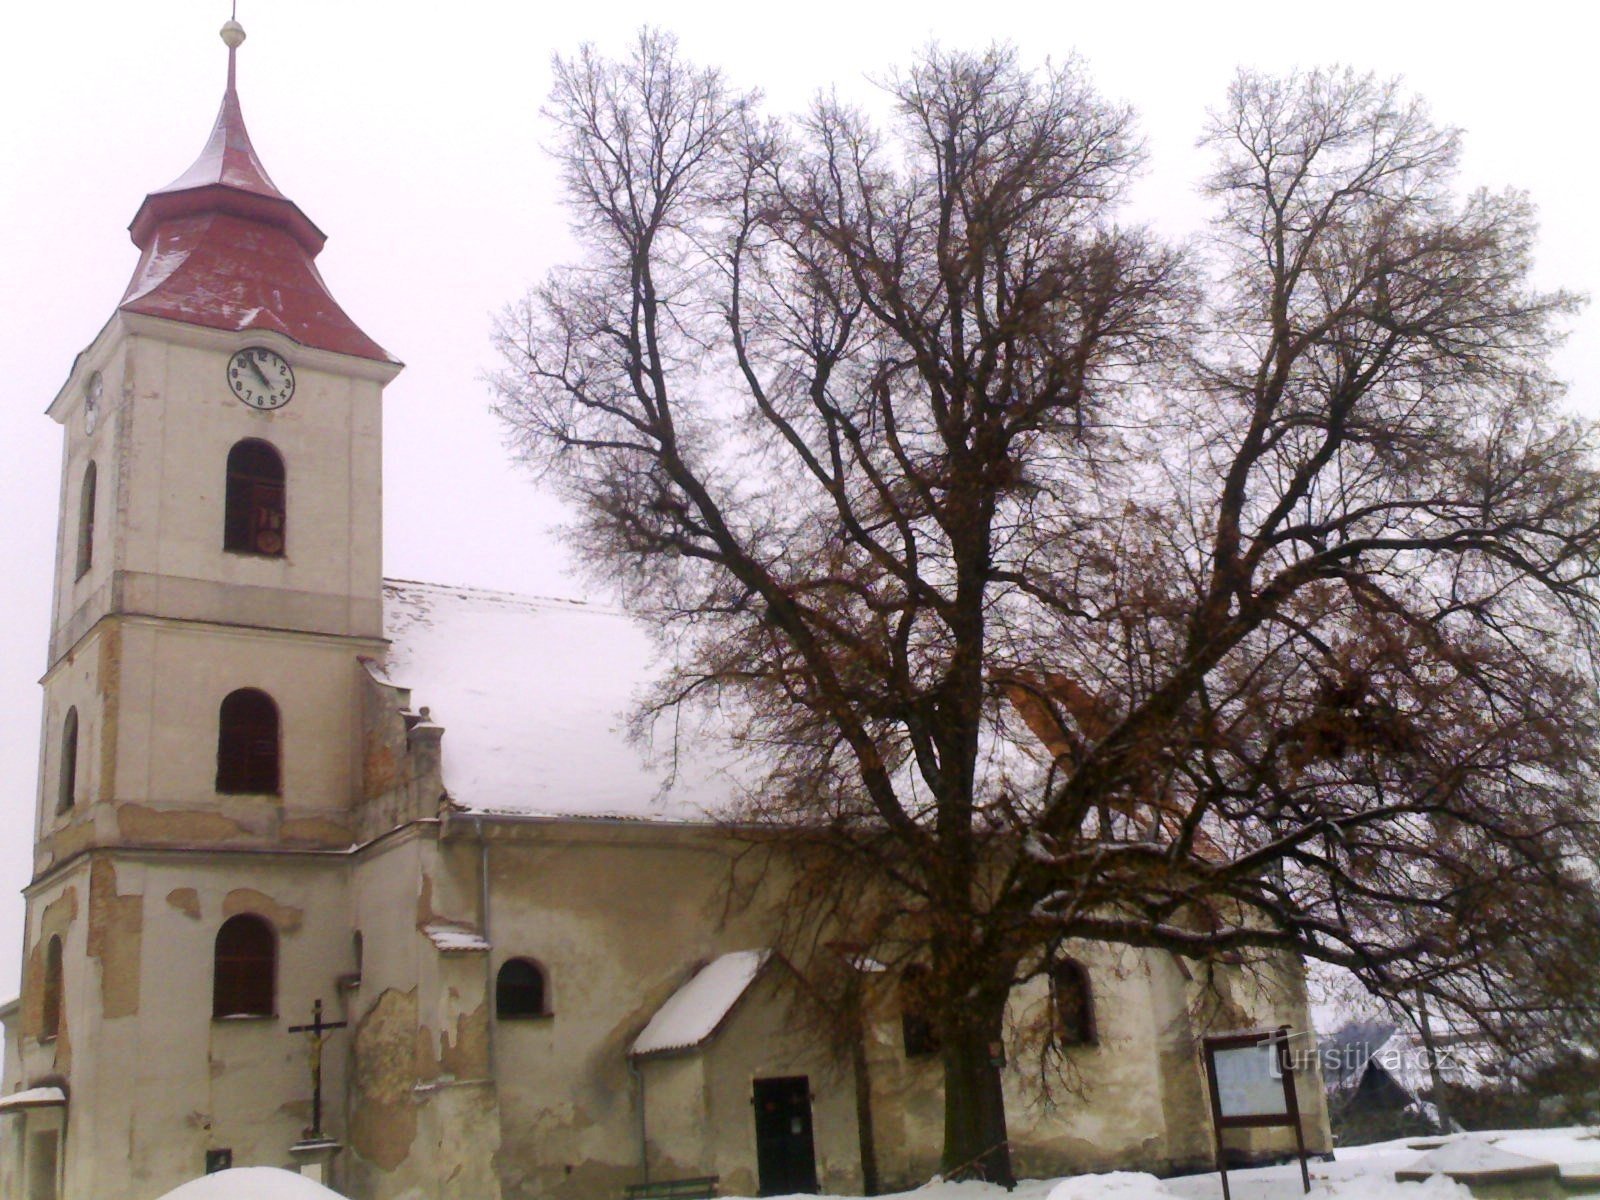 Žiželice - Nhà thờ St. Prokop